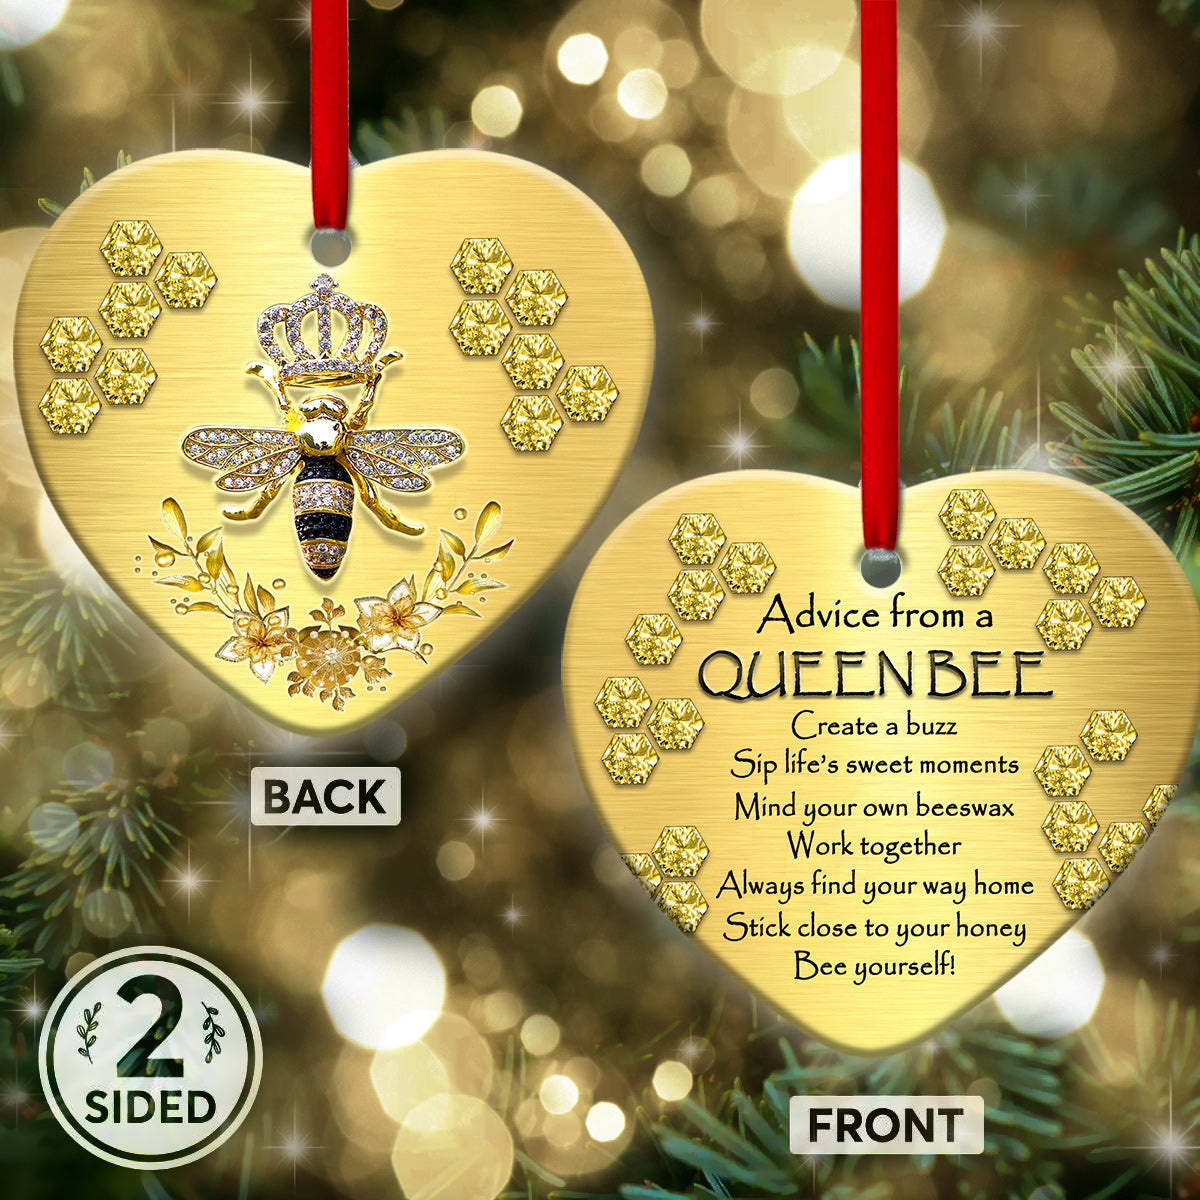 Bee Advice From A Queen Bee - Heart Ornament - Owls Matrix LTD